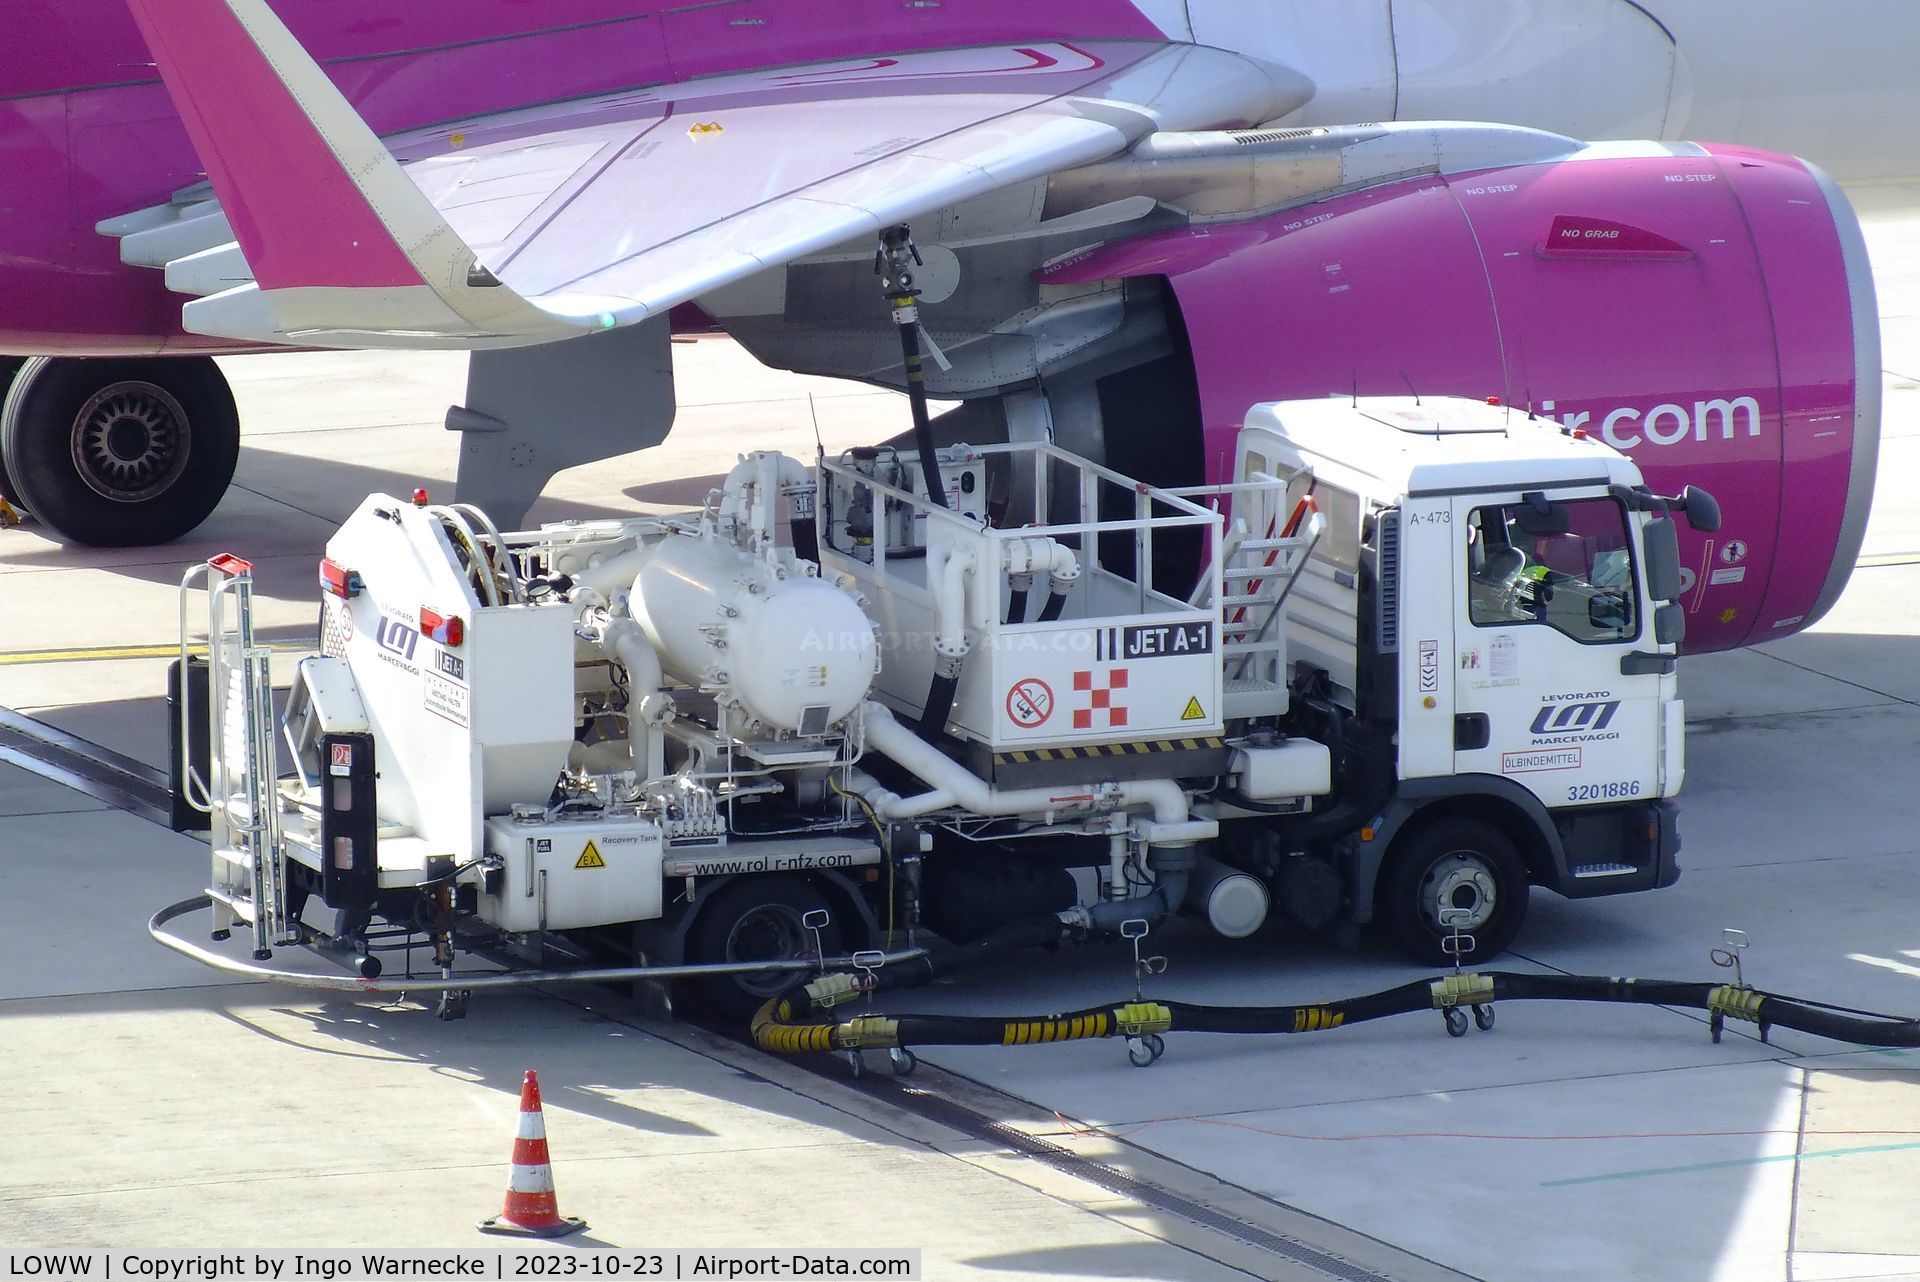 Vienna International Airport, Vienna Austria (LOWW) - hydrant refuelling truck in action at Wien airport